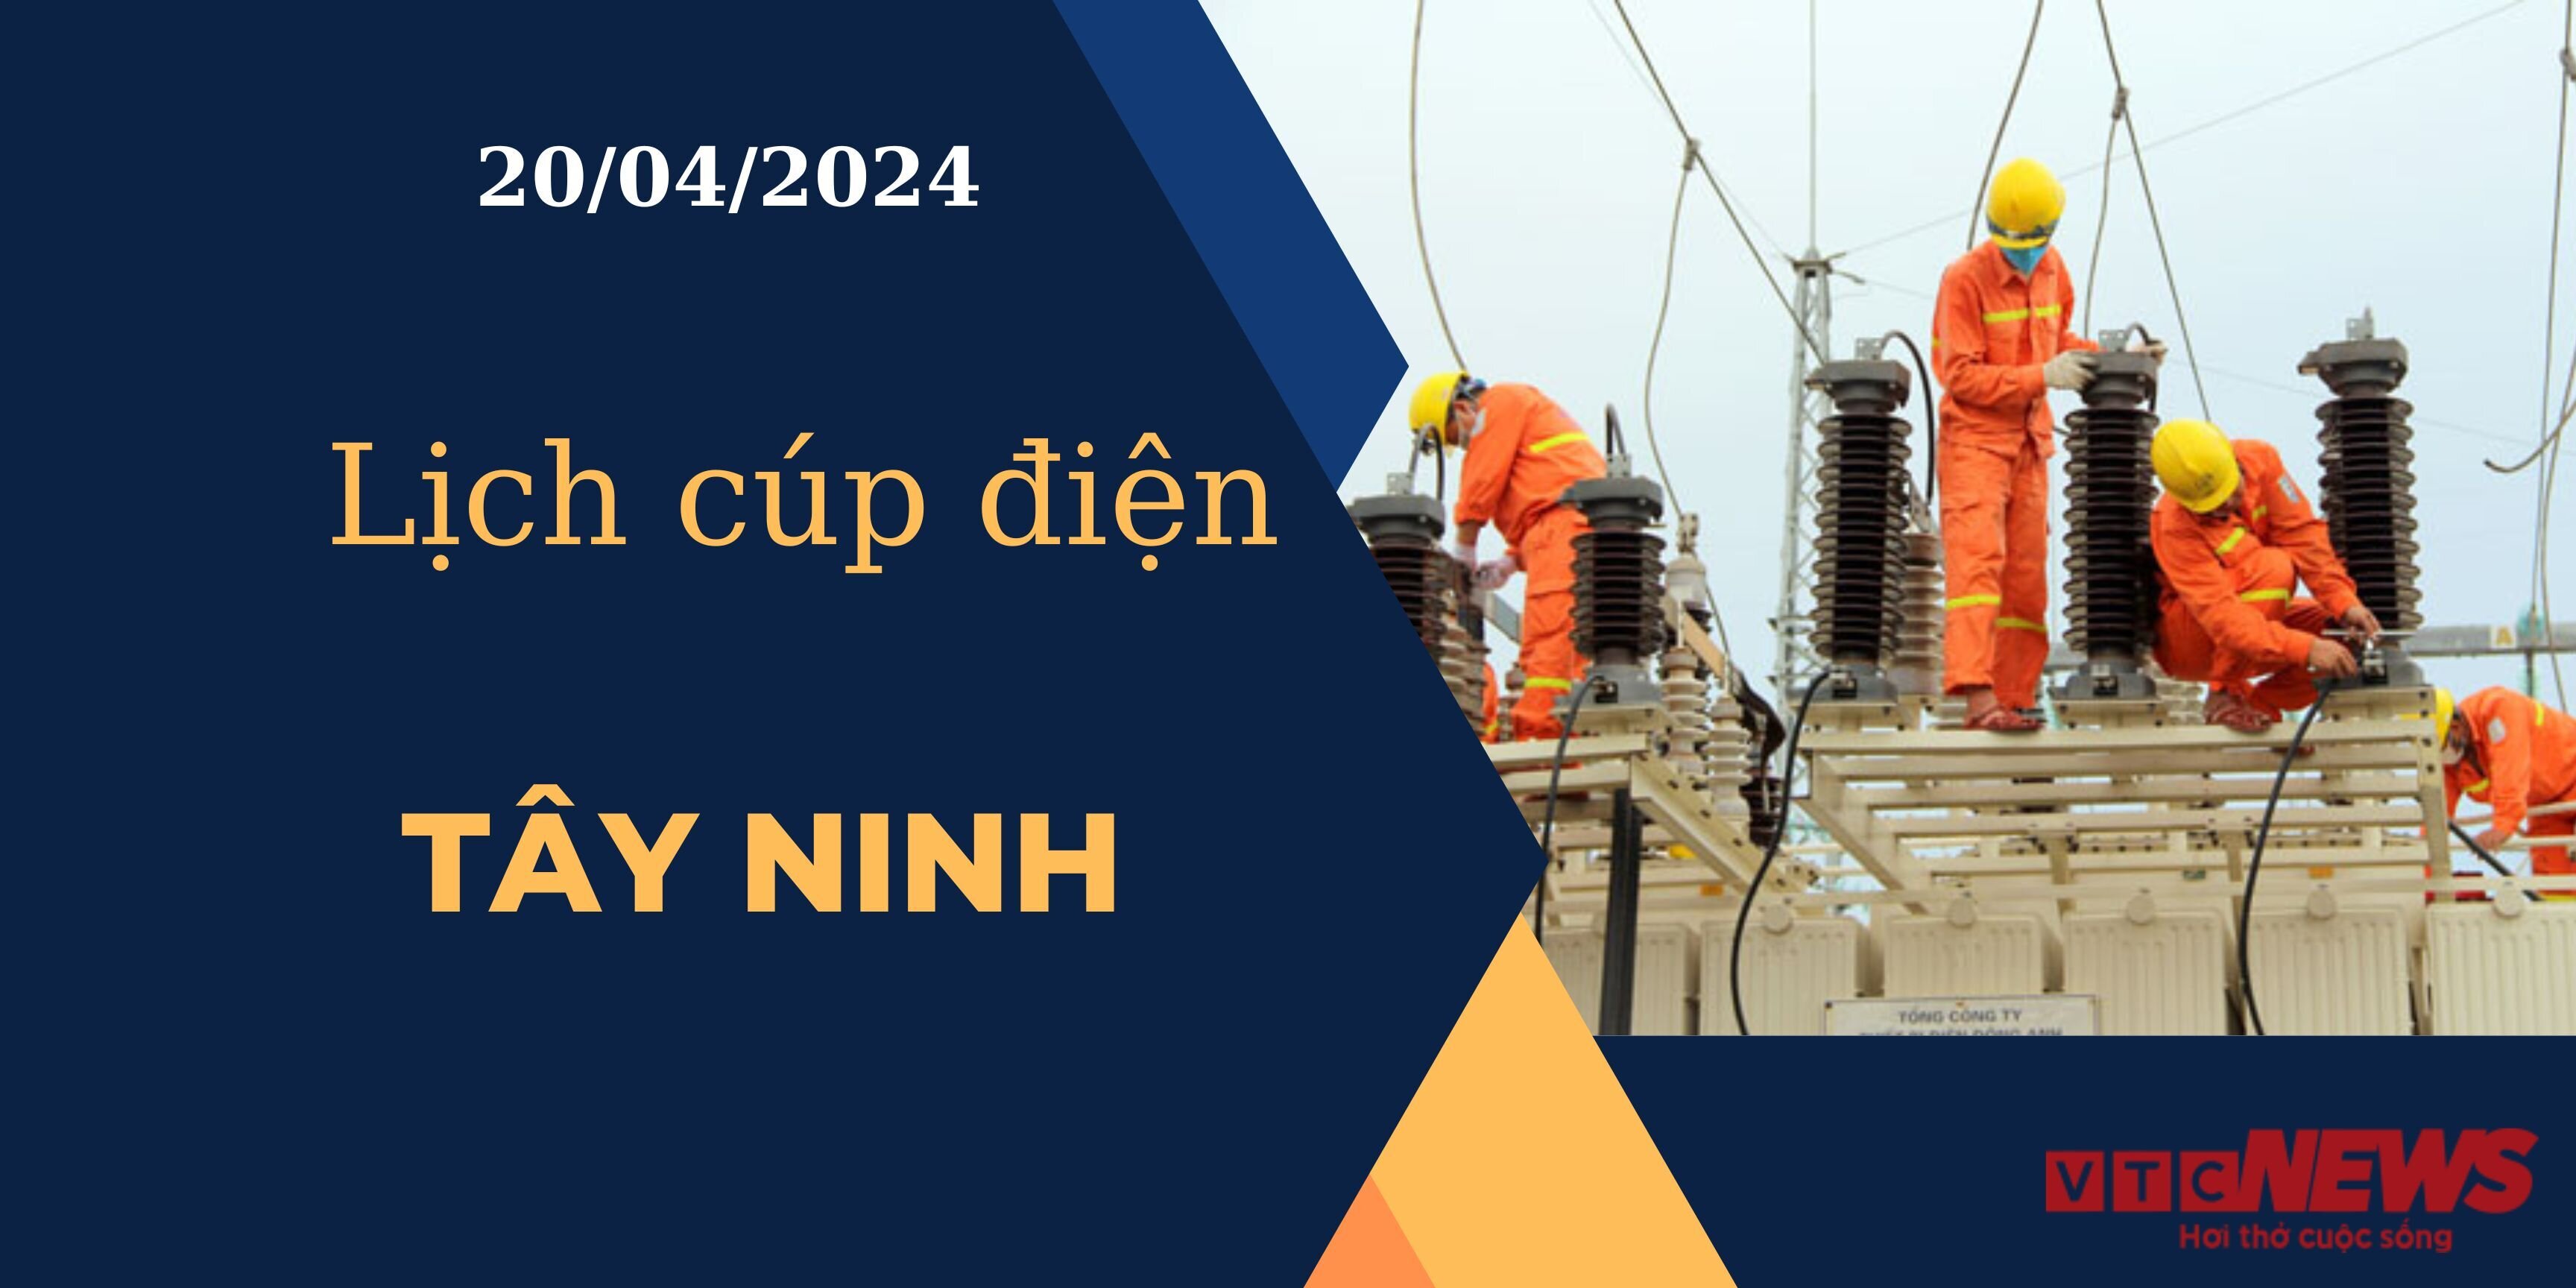 Lịch cúp điện hôm nay ngày 20/04/2024 tại Tây Ninh